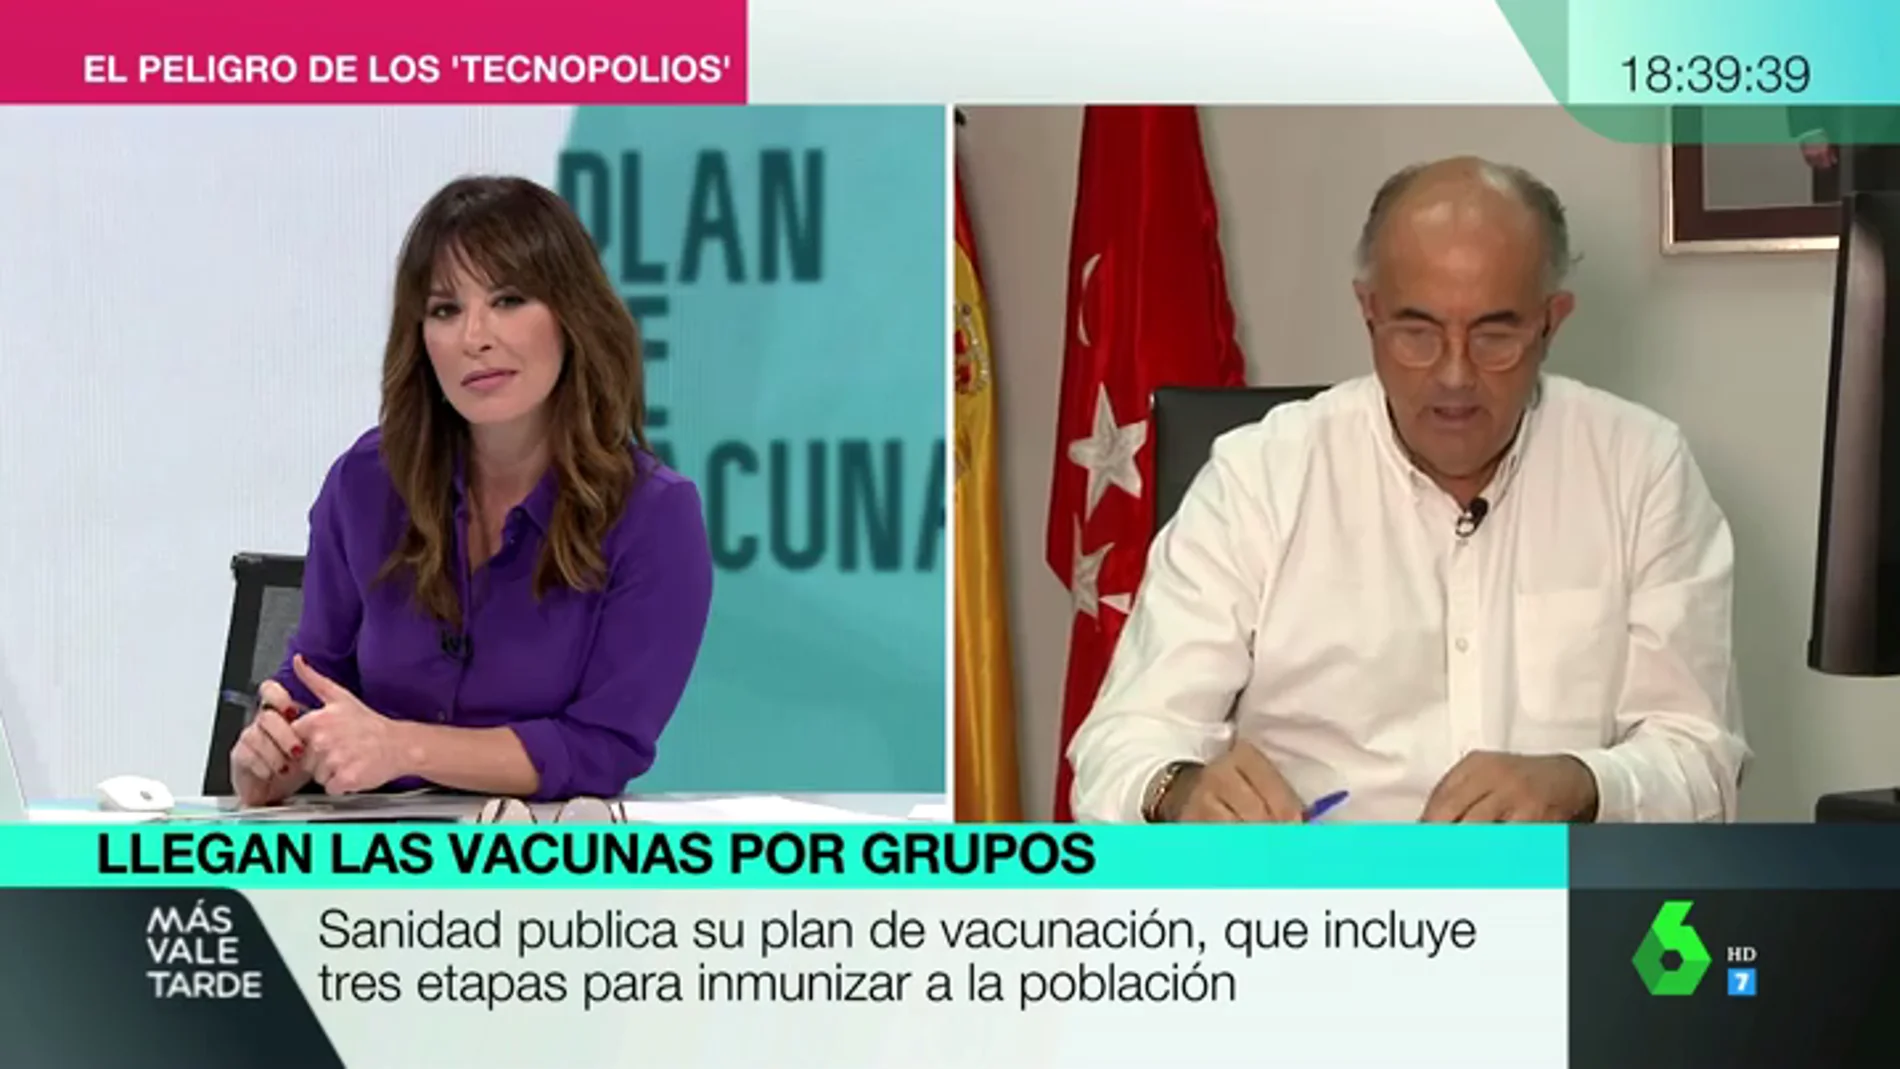 Antonio Zapatero: "Como médico, en cuanto pueda me vacuno. Es parte de la solución y no tengo ningún miedo"